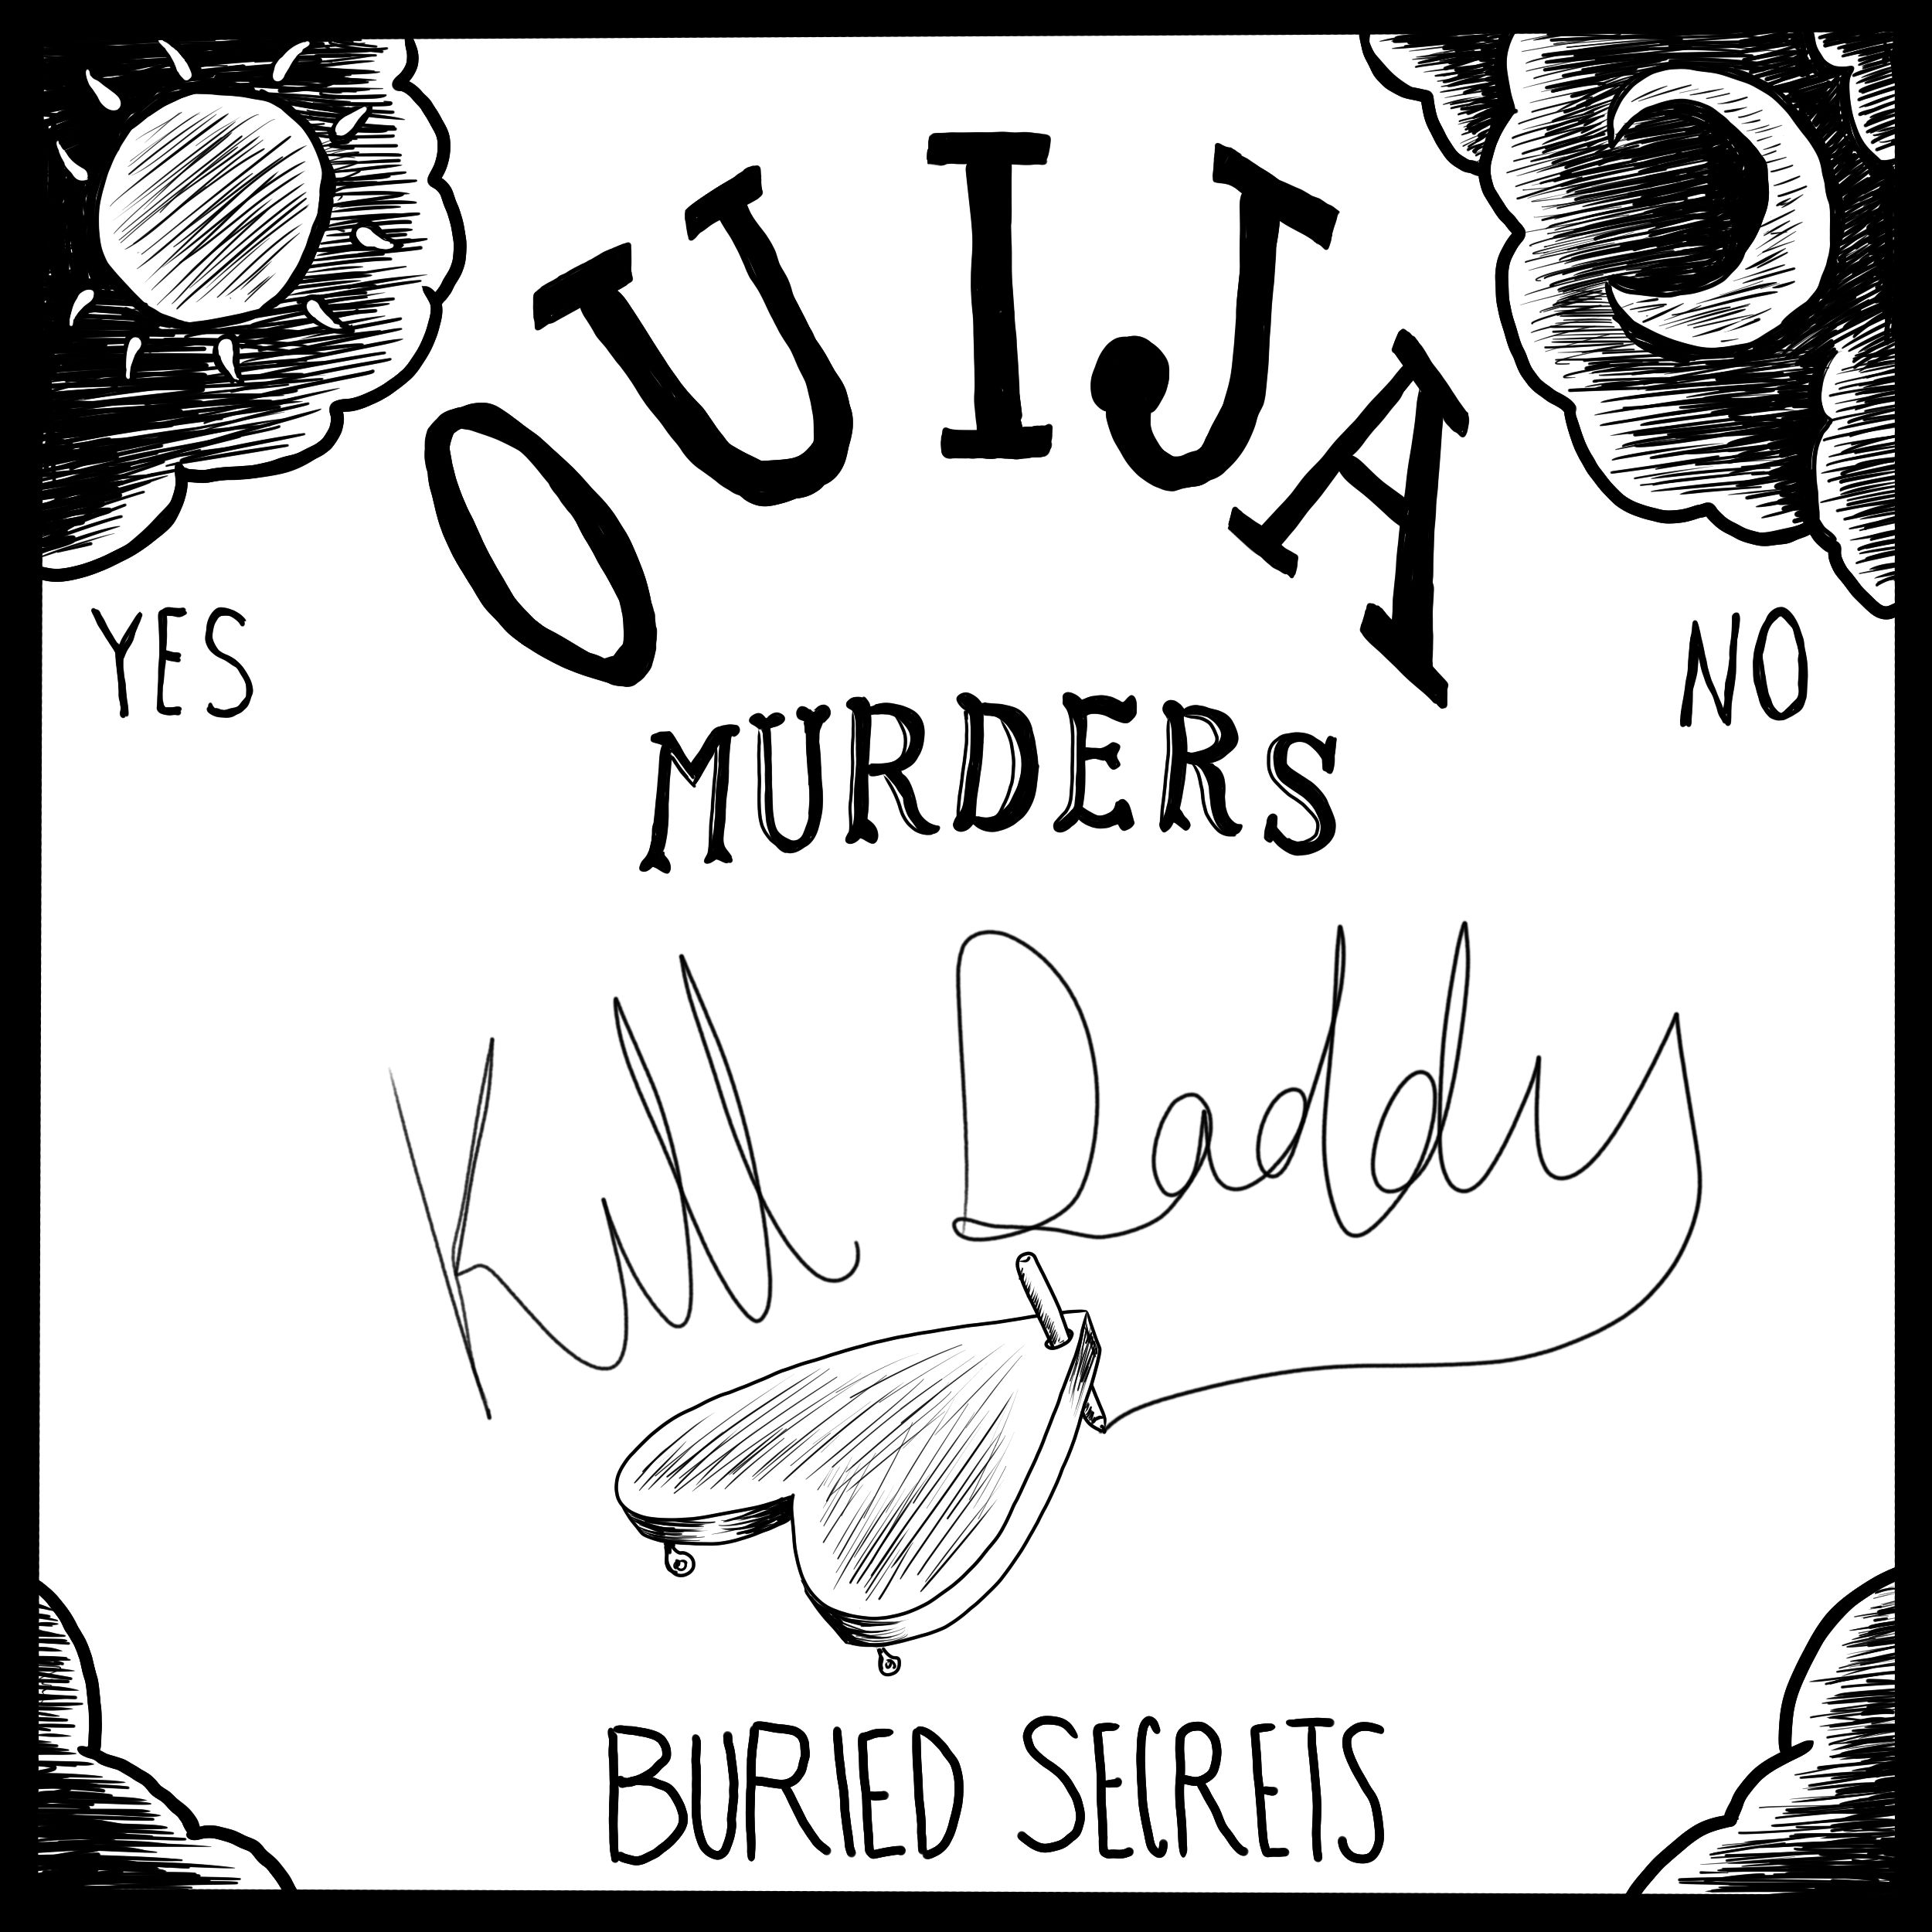 Kill Daddy: The Turley Ouija Board Murder (Ouija Boards Part 9)